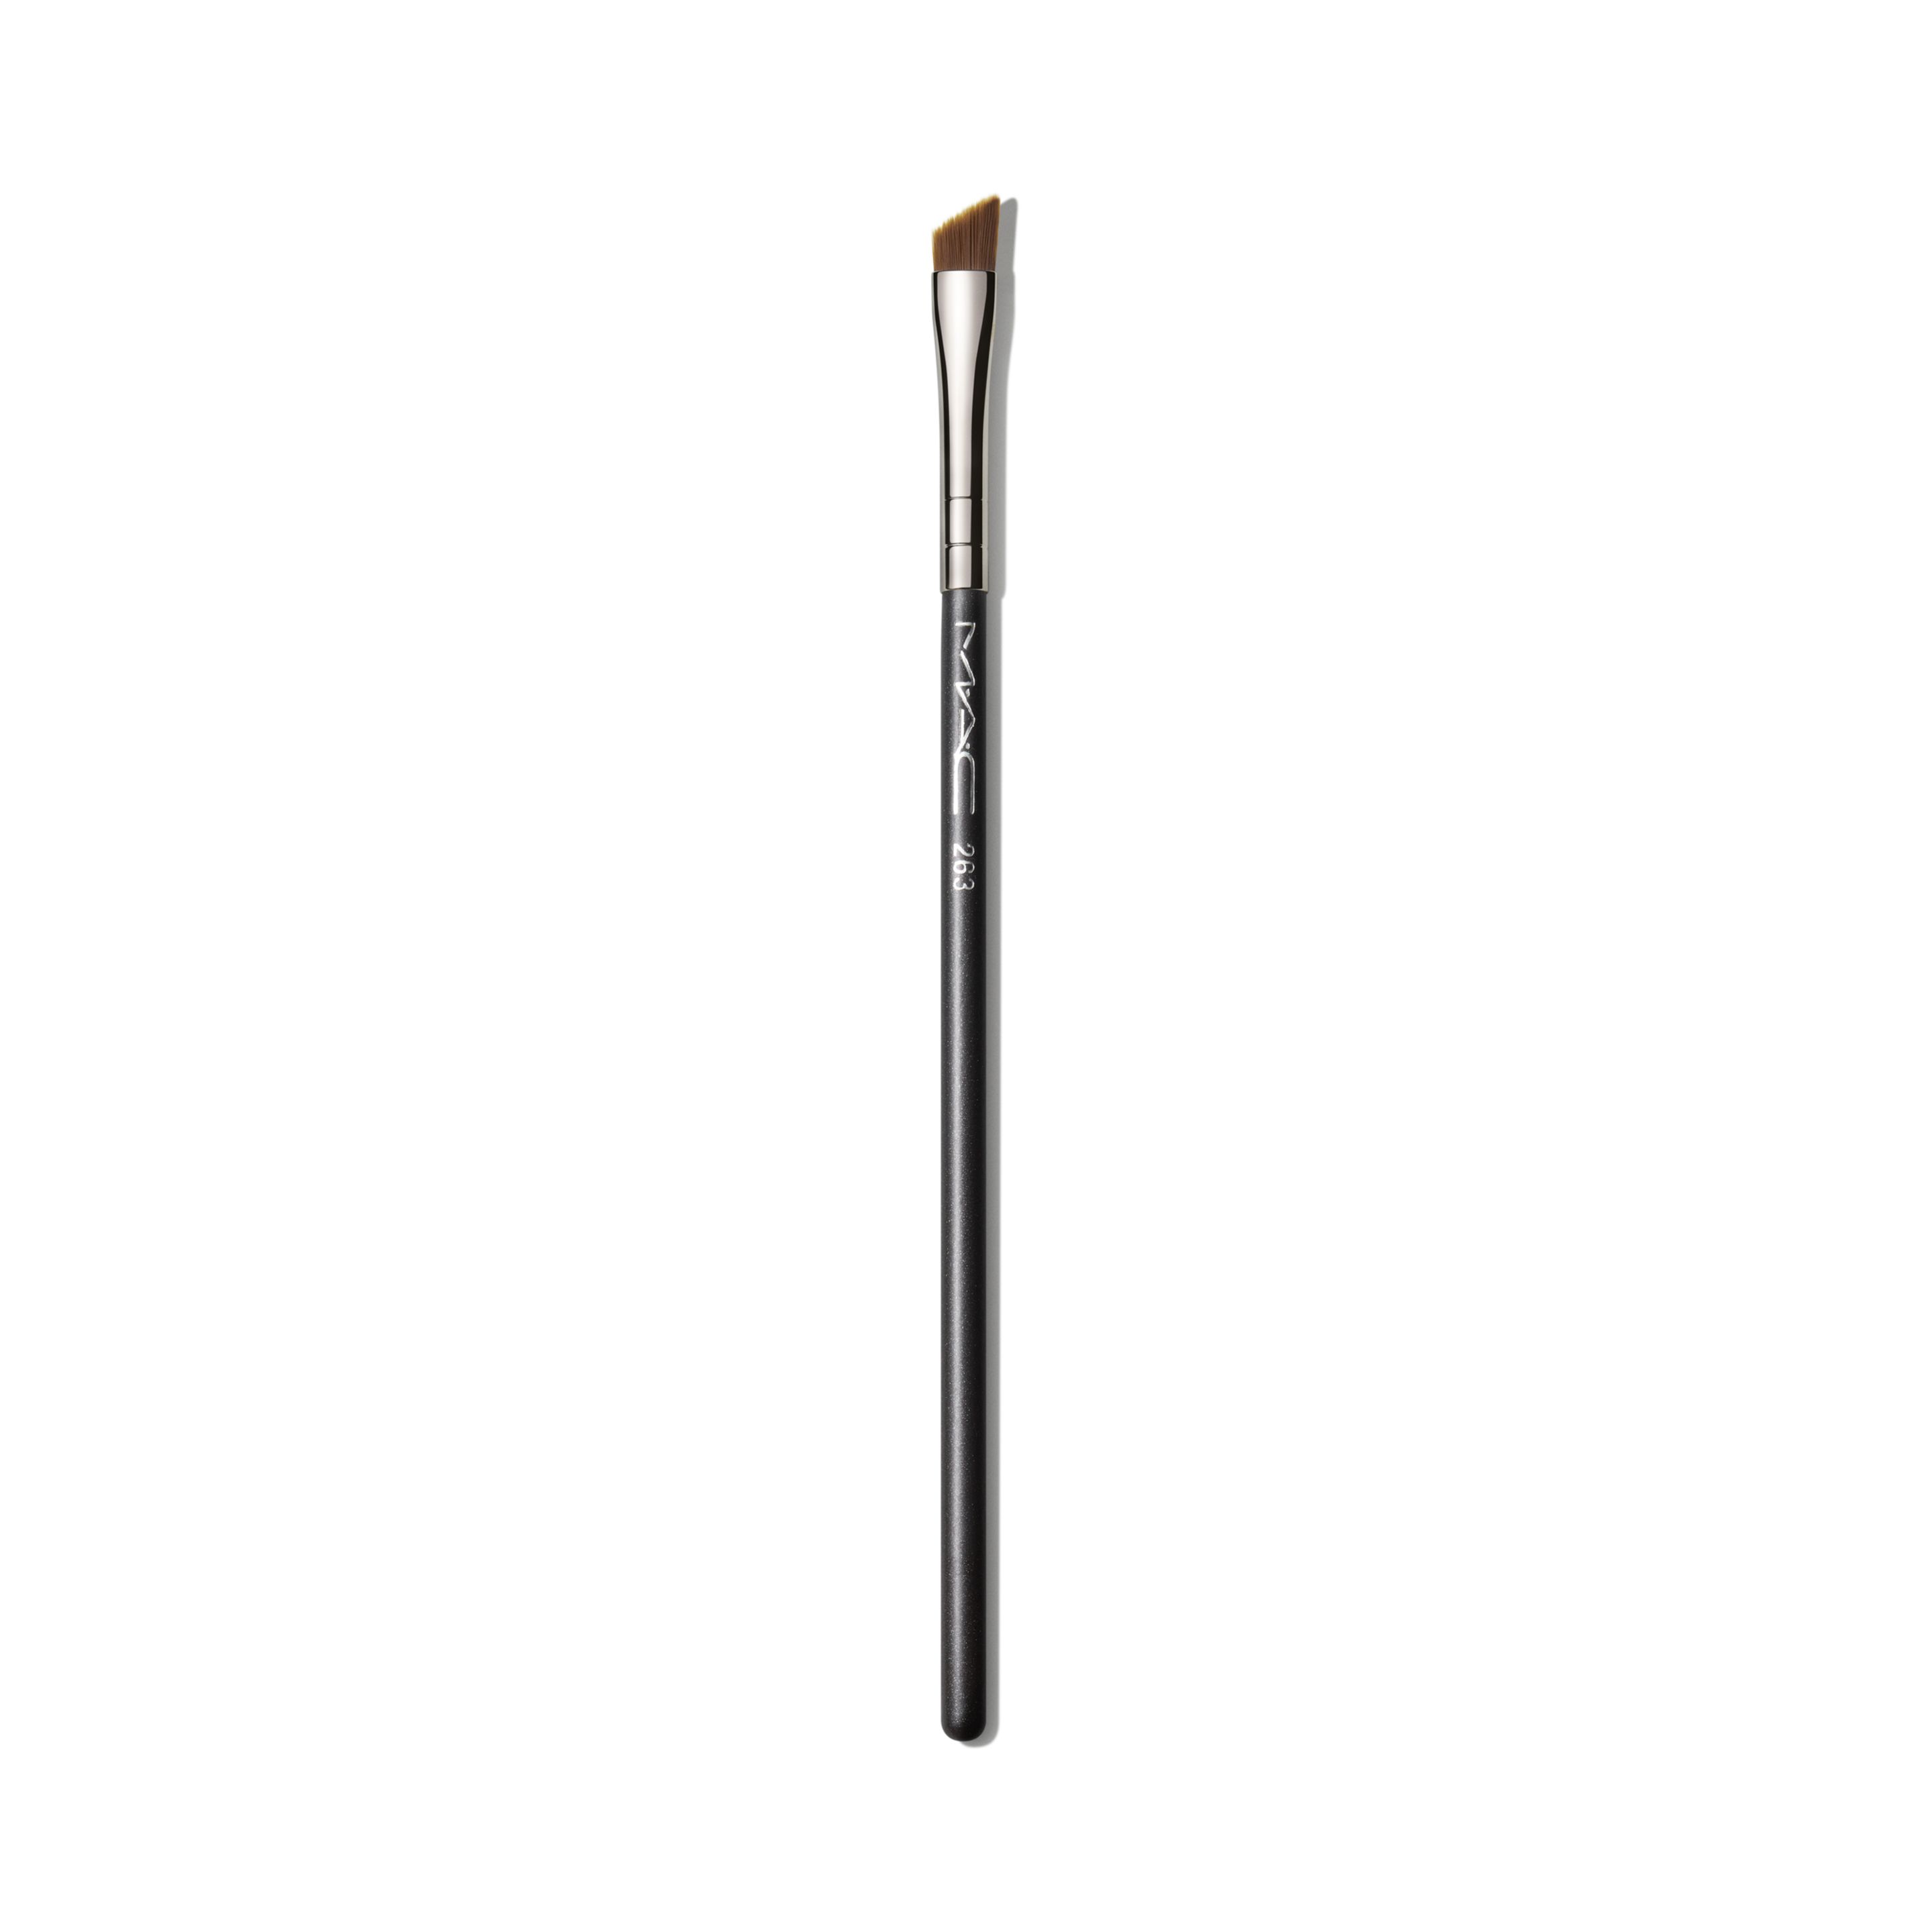 Кисть для глаз и бровей MAC Cosmetics Small Angle Brush №263 скошенная, черная